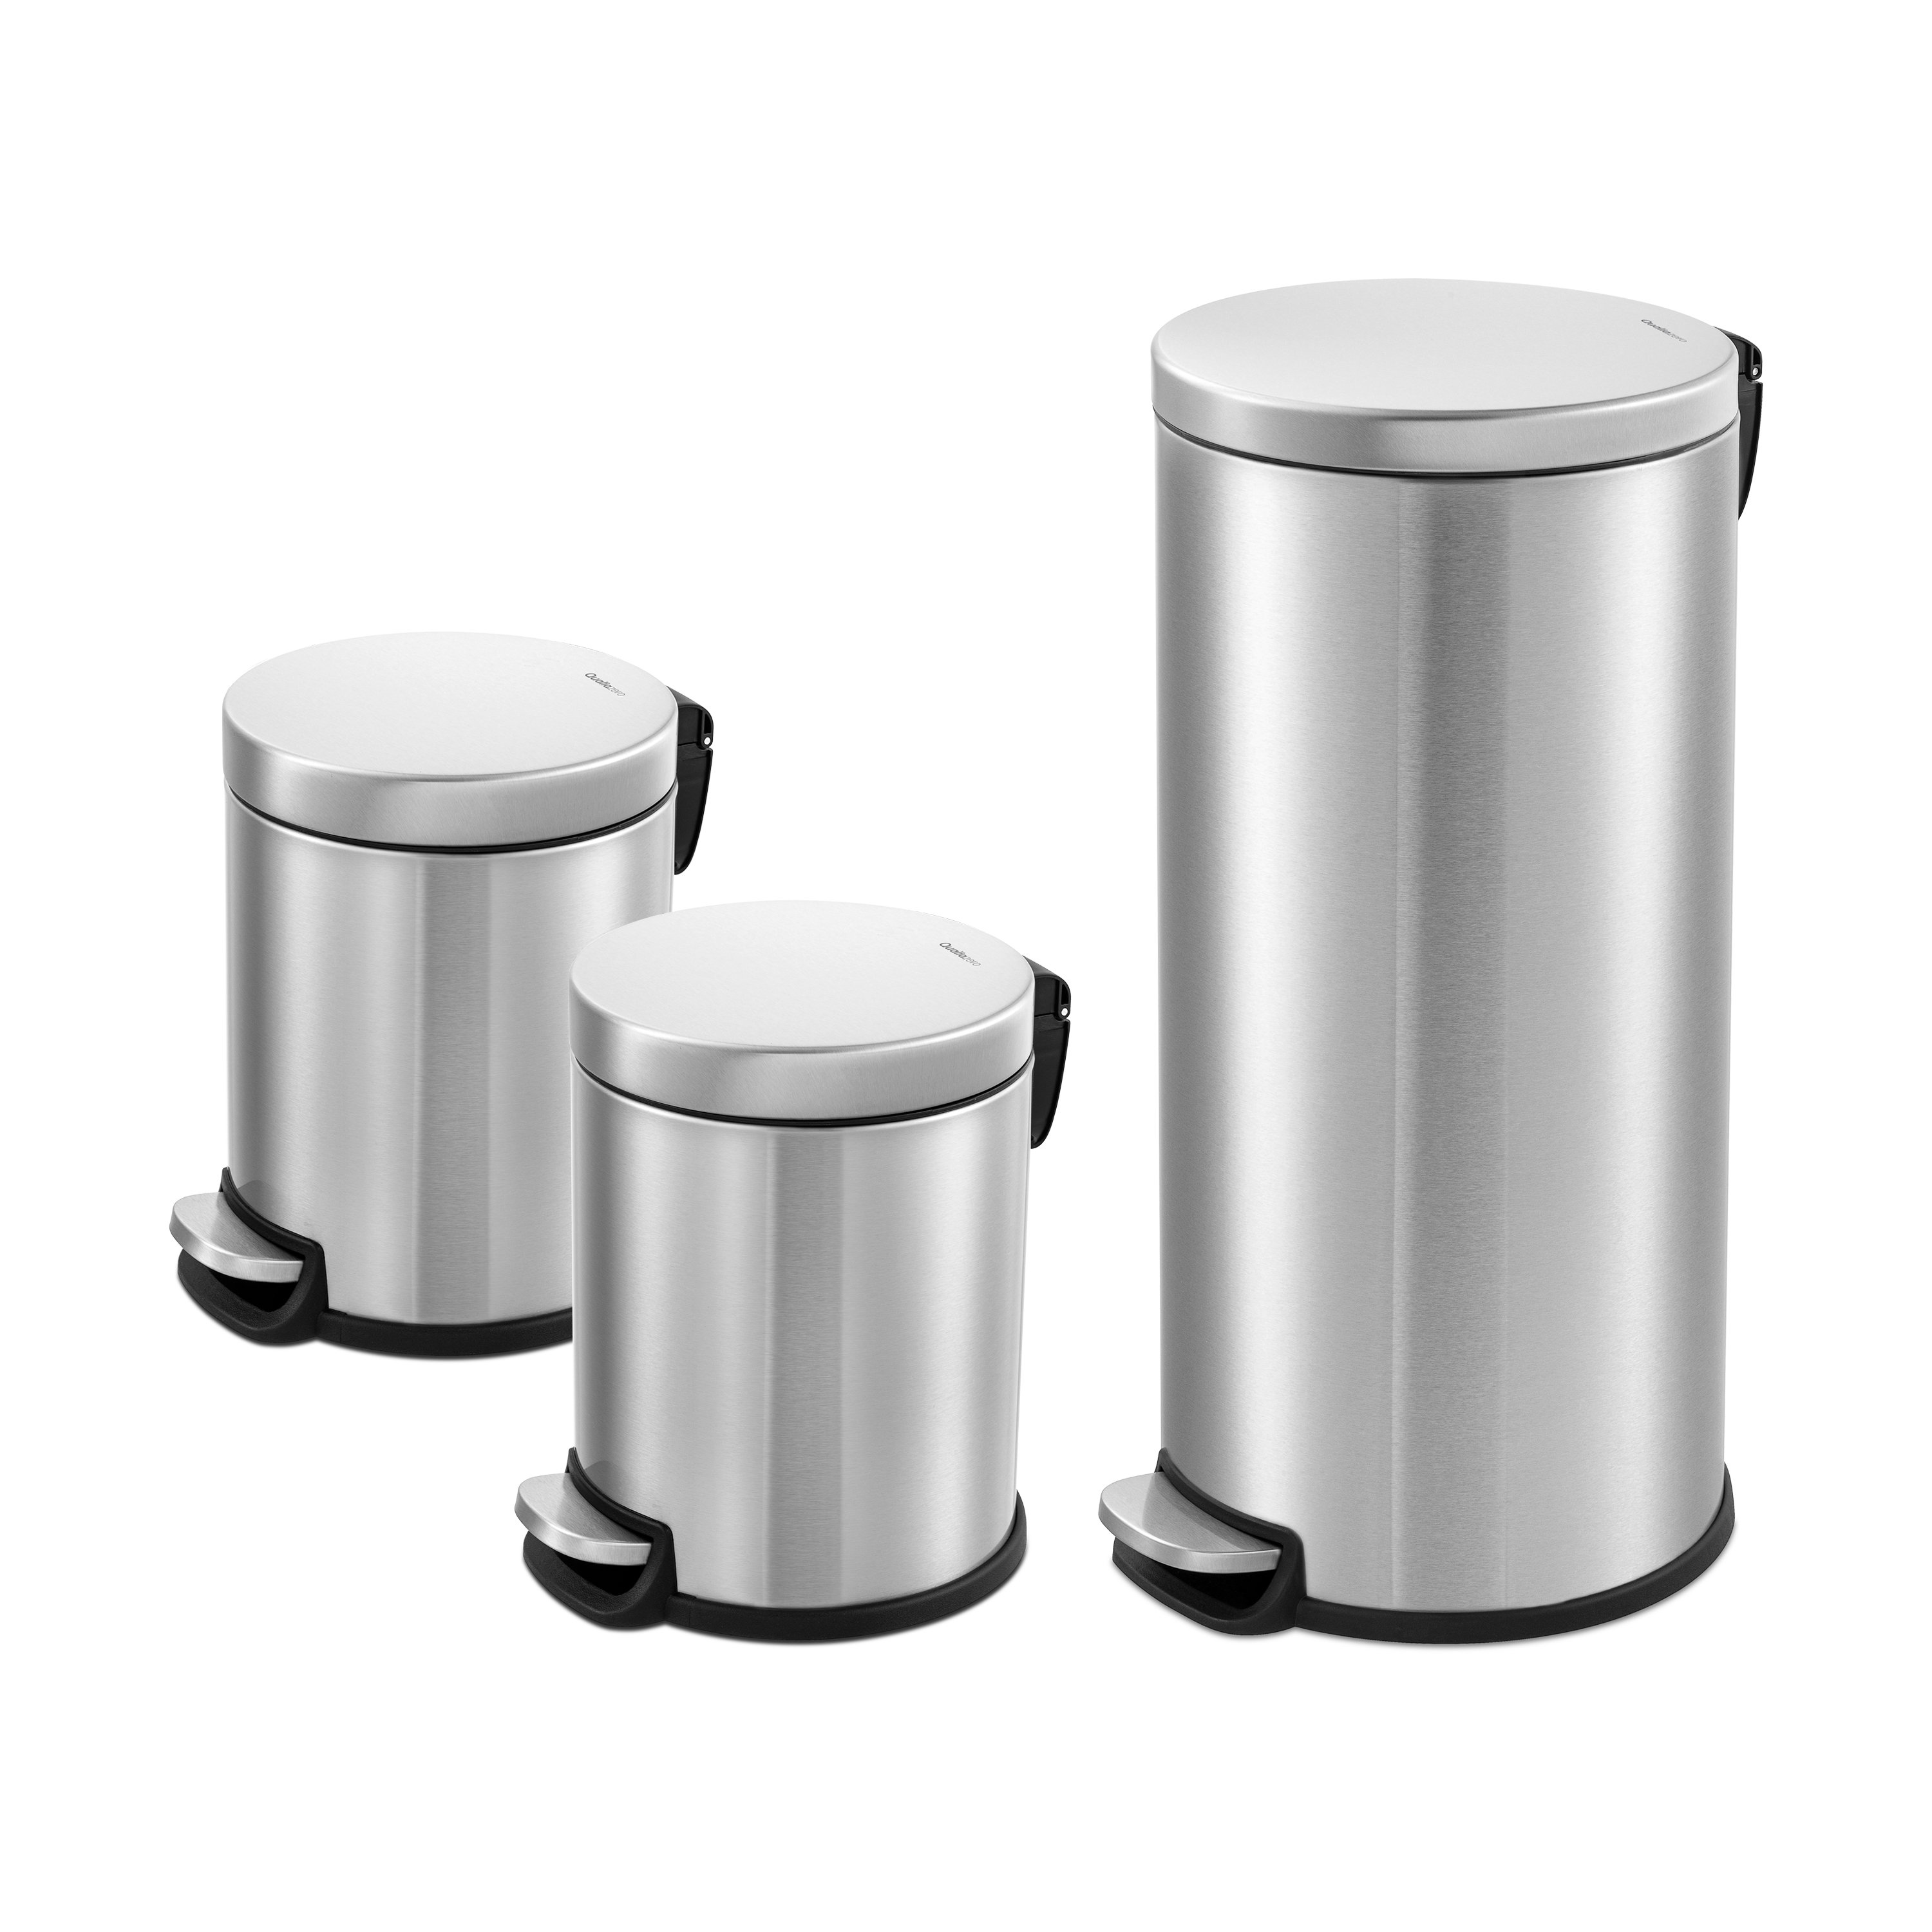 https://assets.wfcdn.com/im/55130569/compr-r85/2407/240742828/8-gallons-steel-step-on-trash-can-sets.jpg